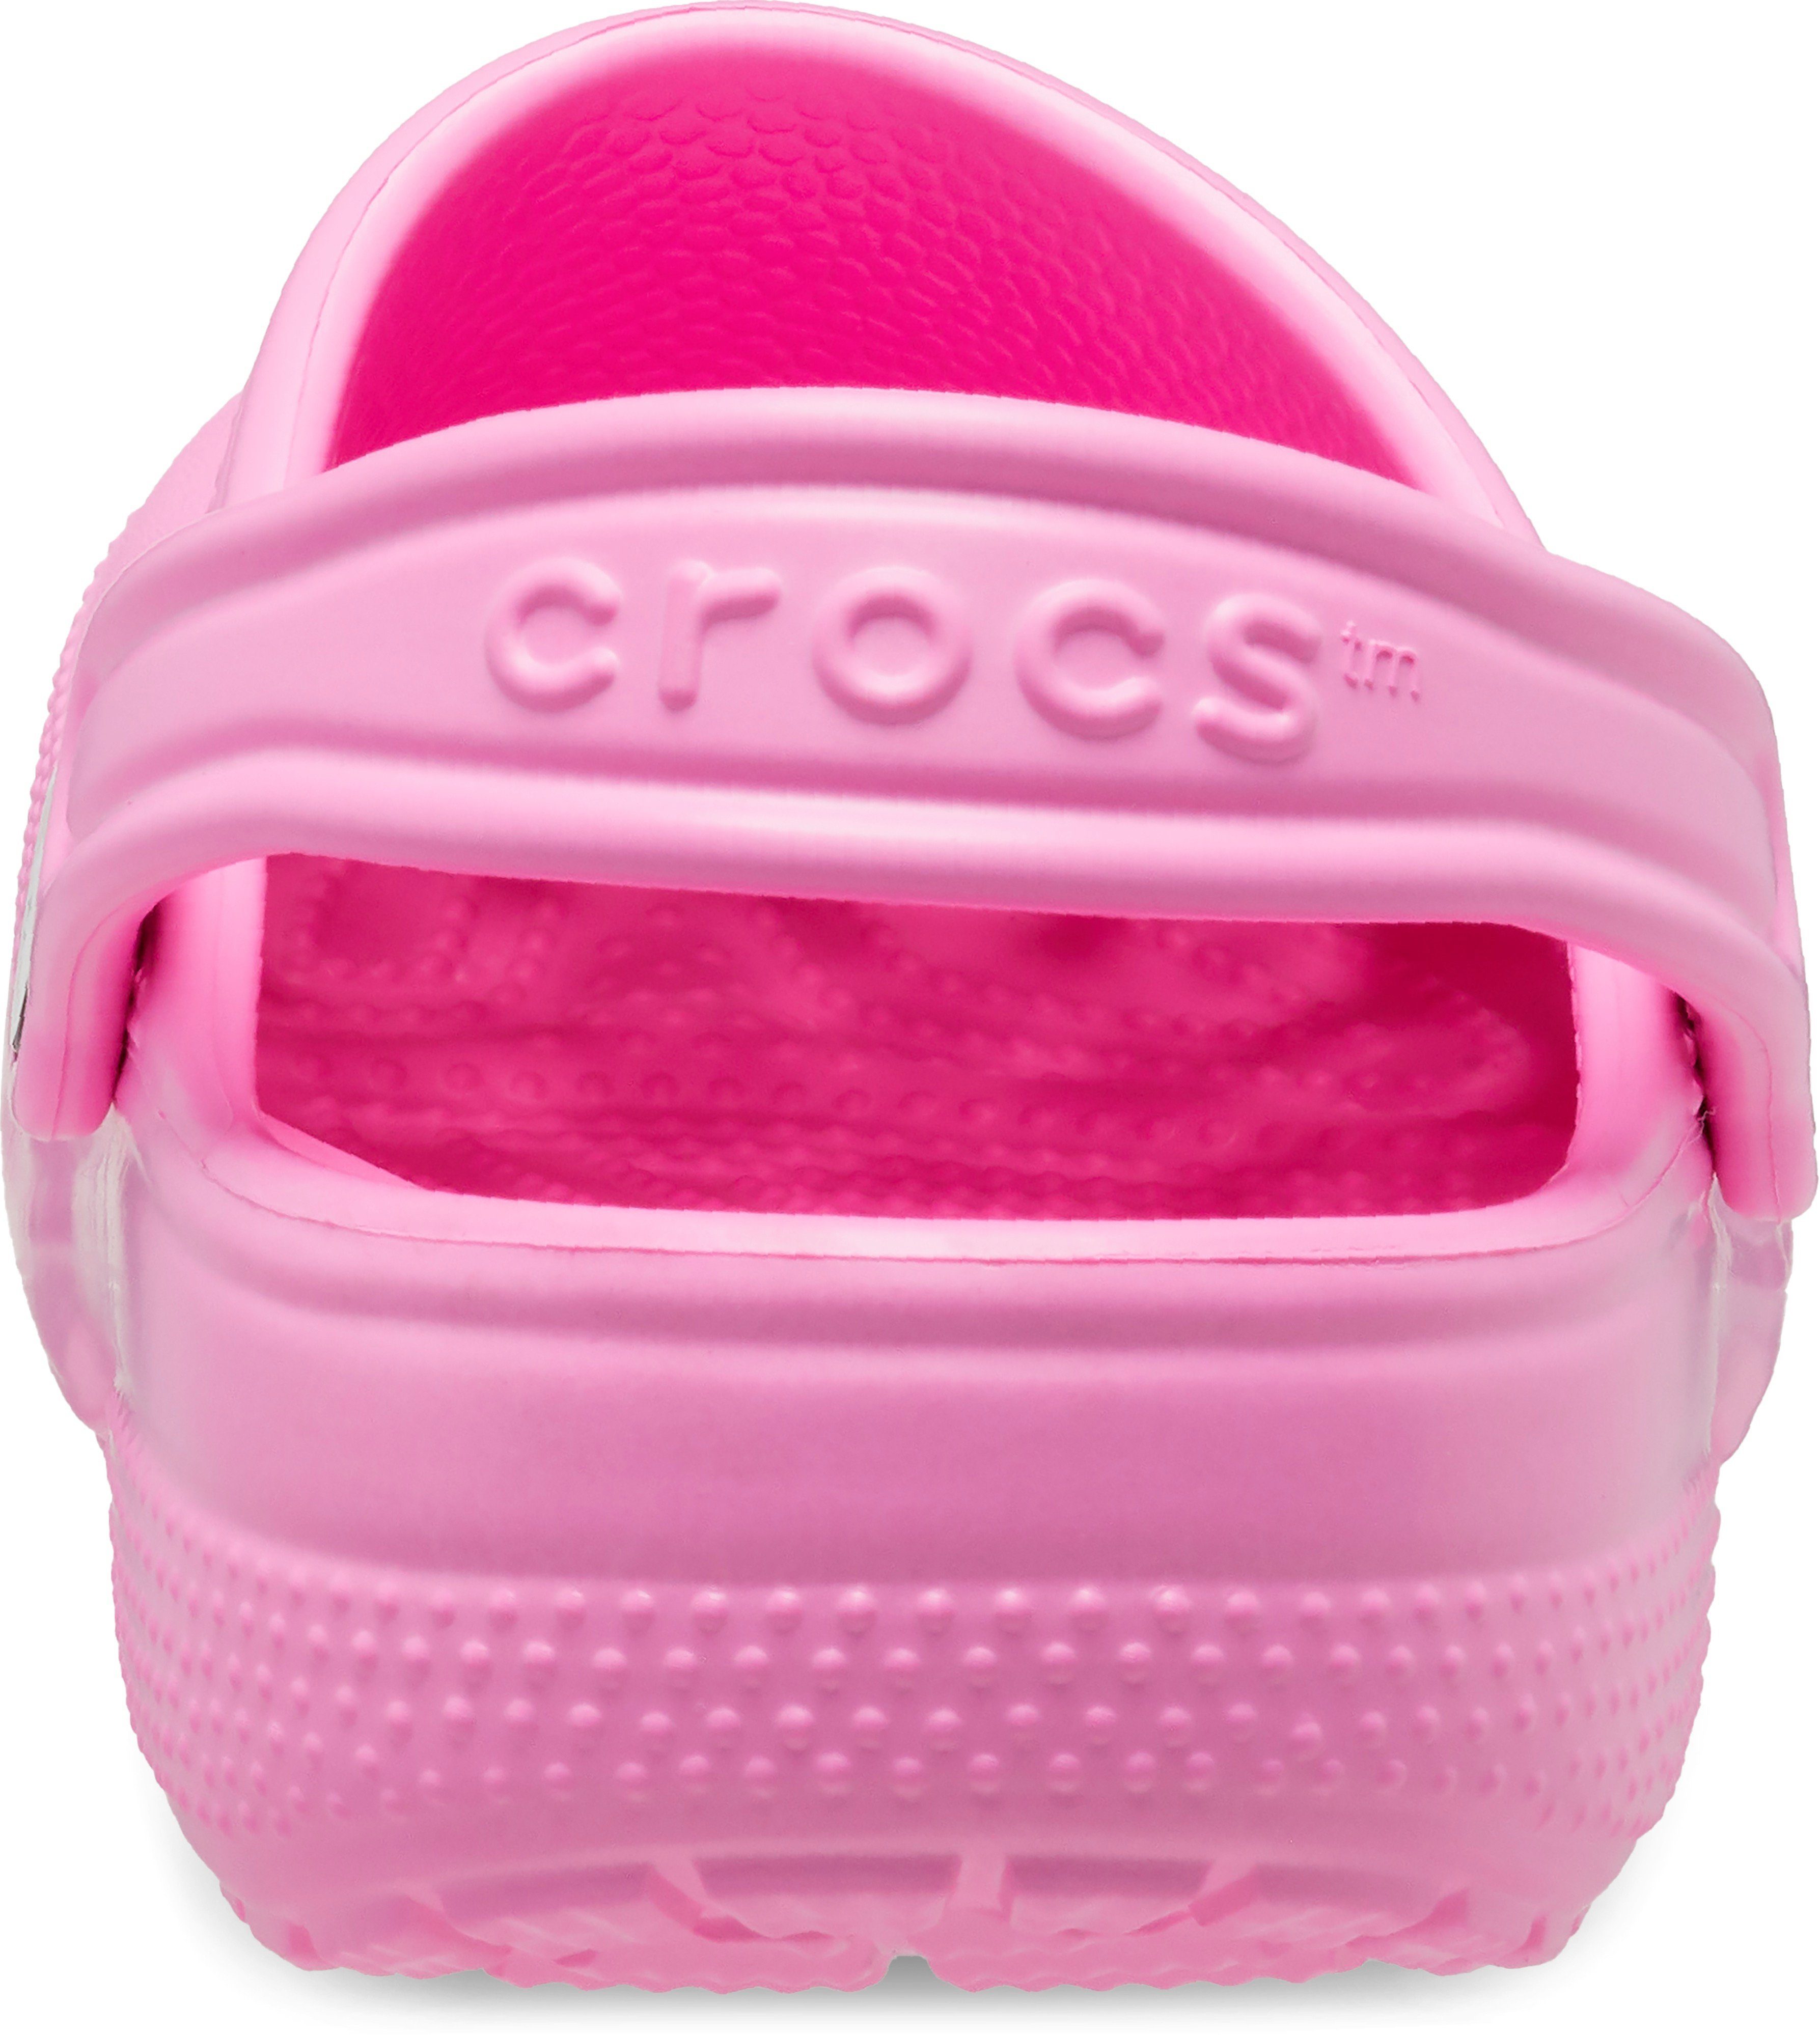 Clog K Clog Classic Crocs pink